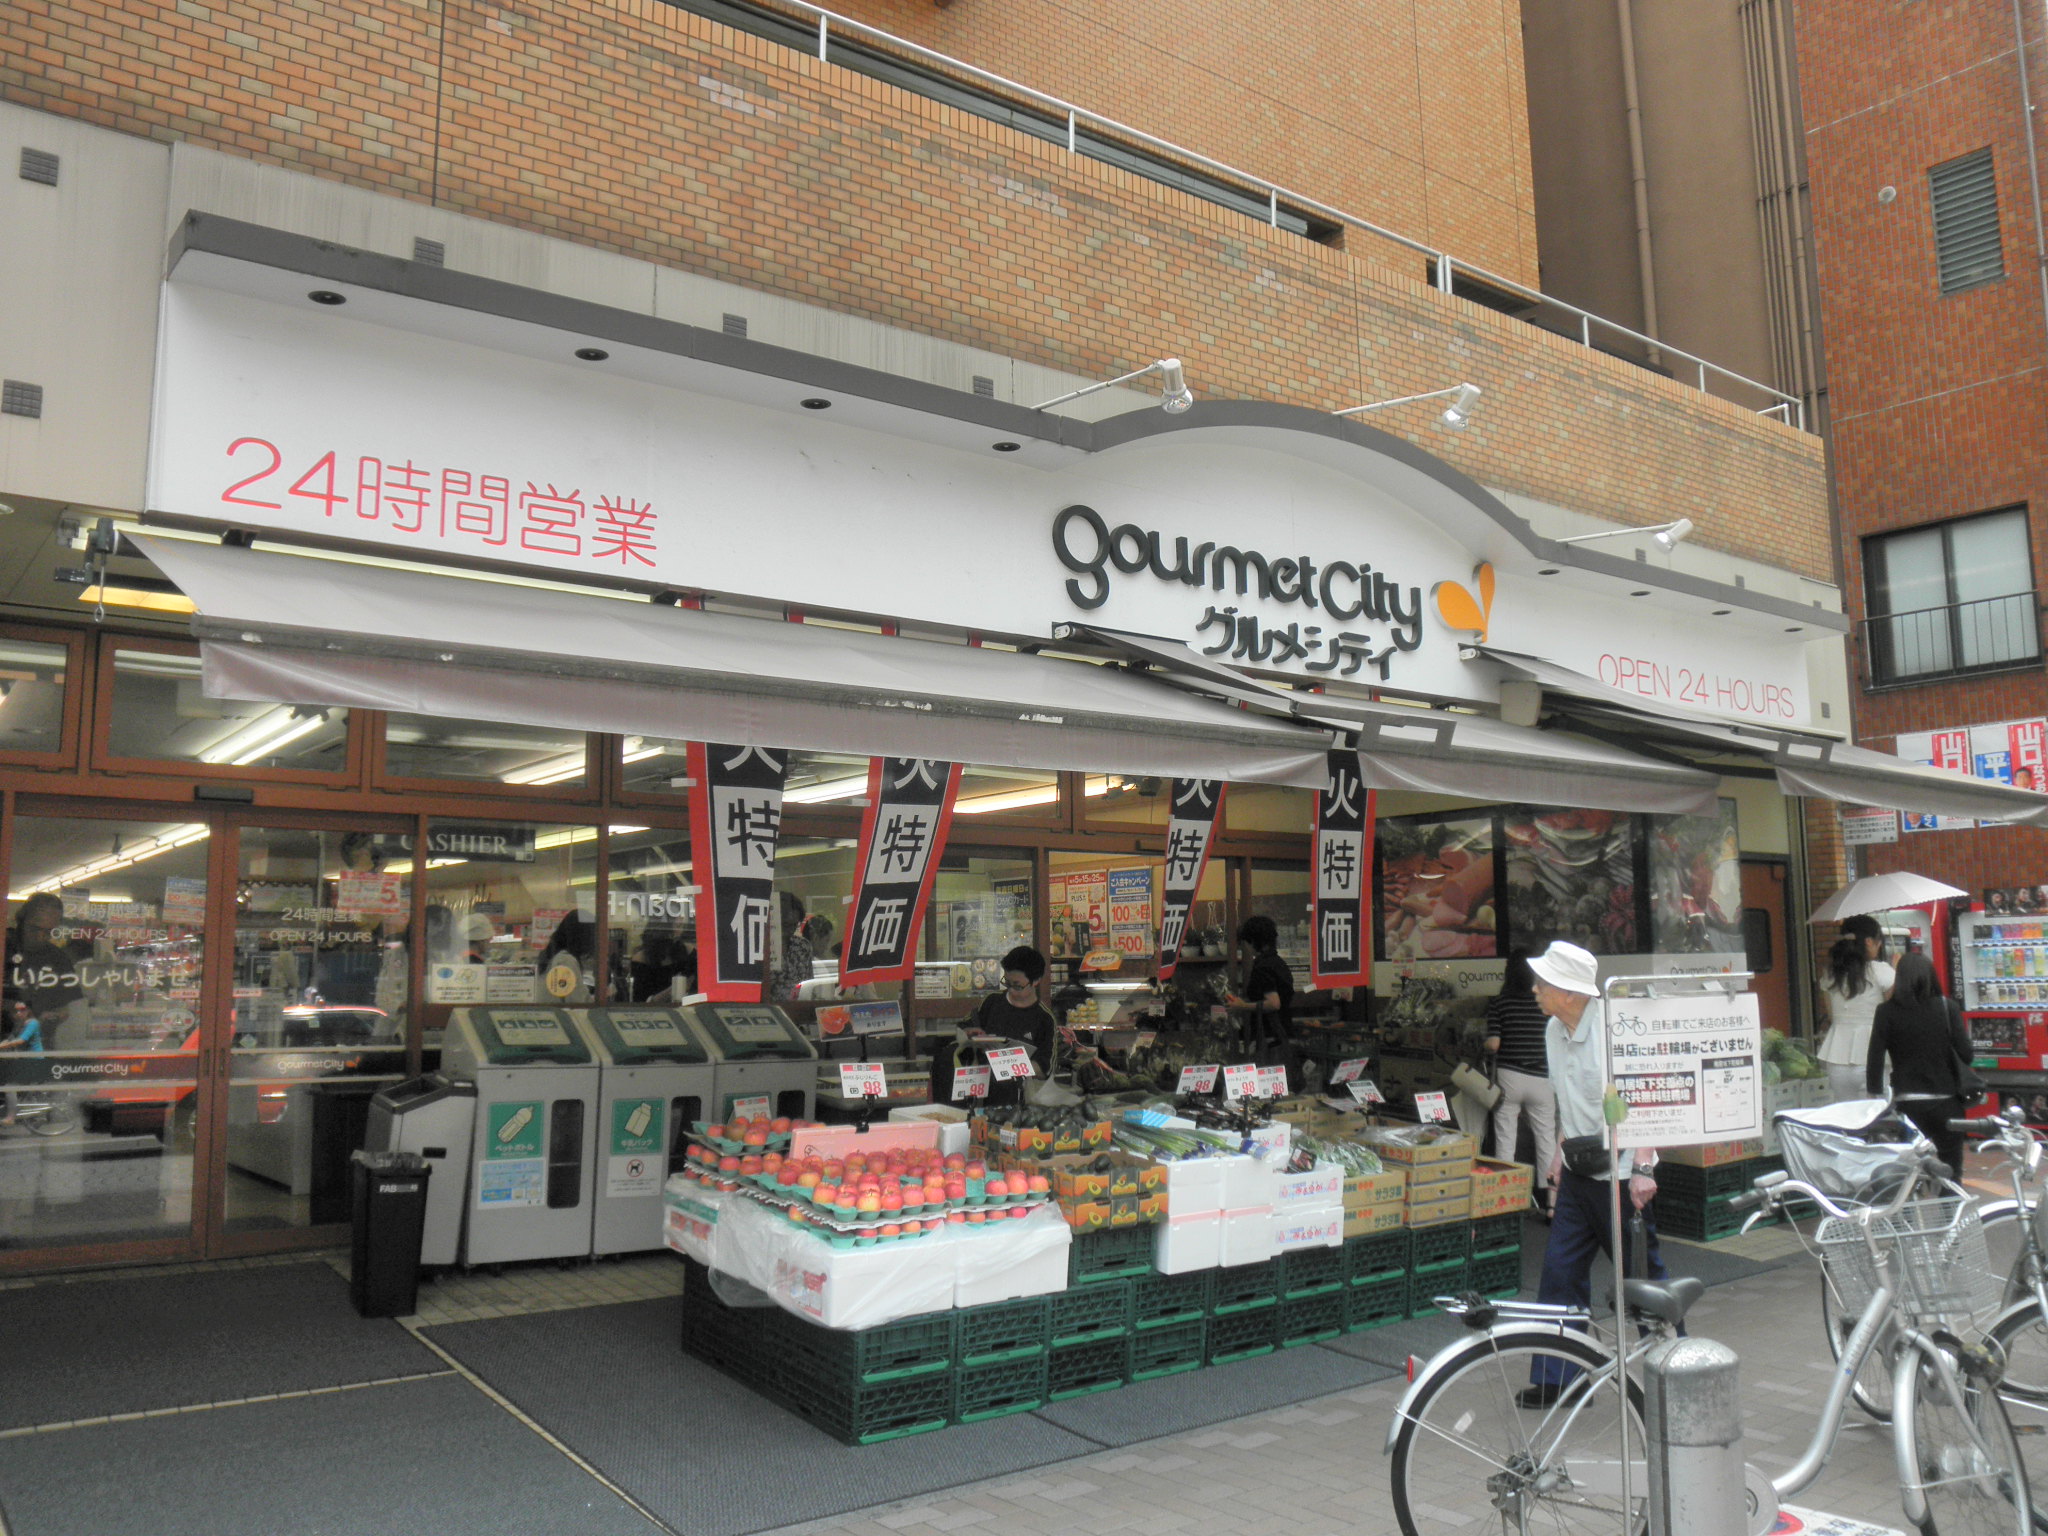 Supermarket. 216m until Gourmet City linen store (Super)